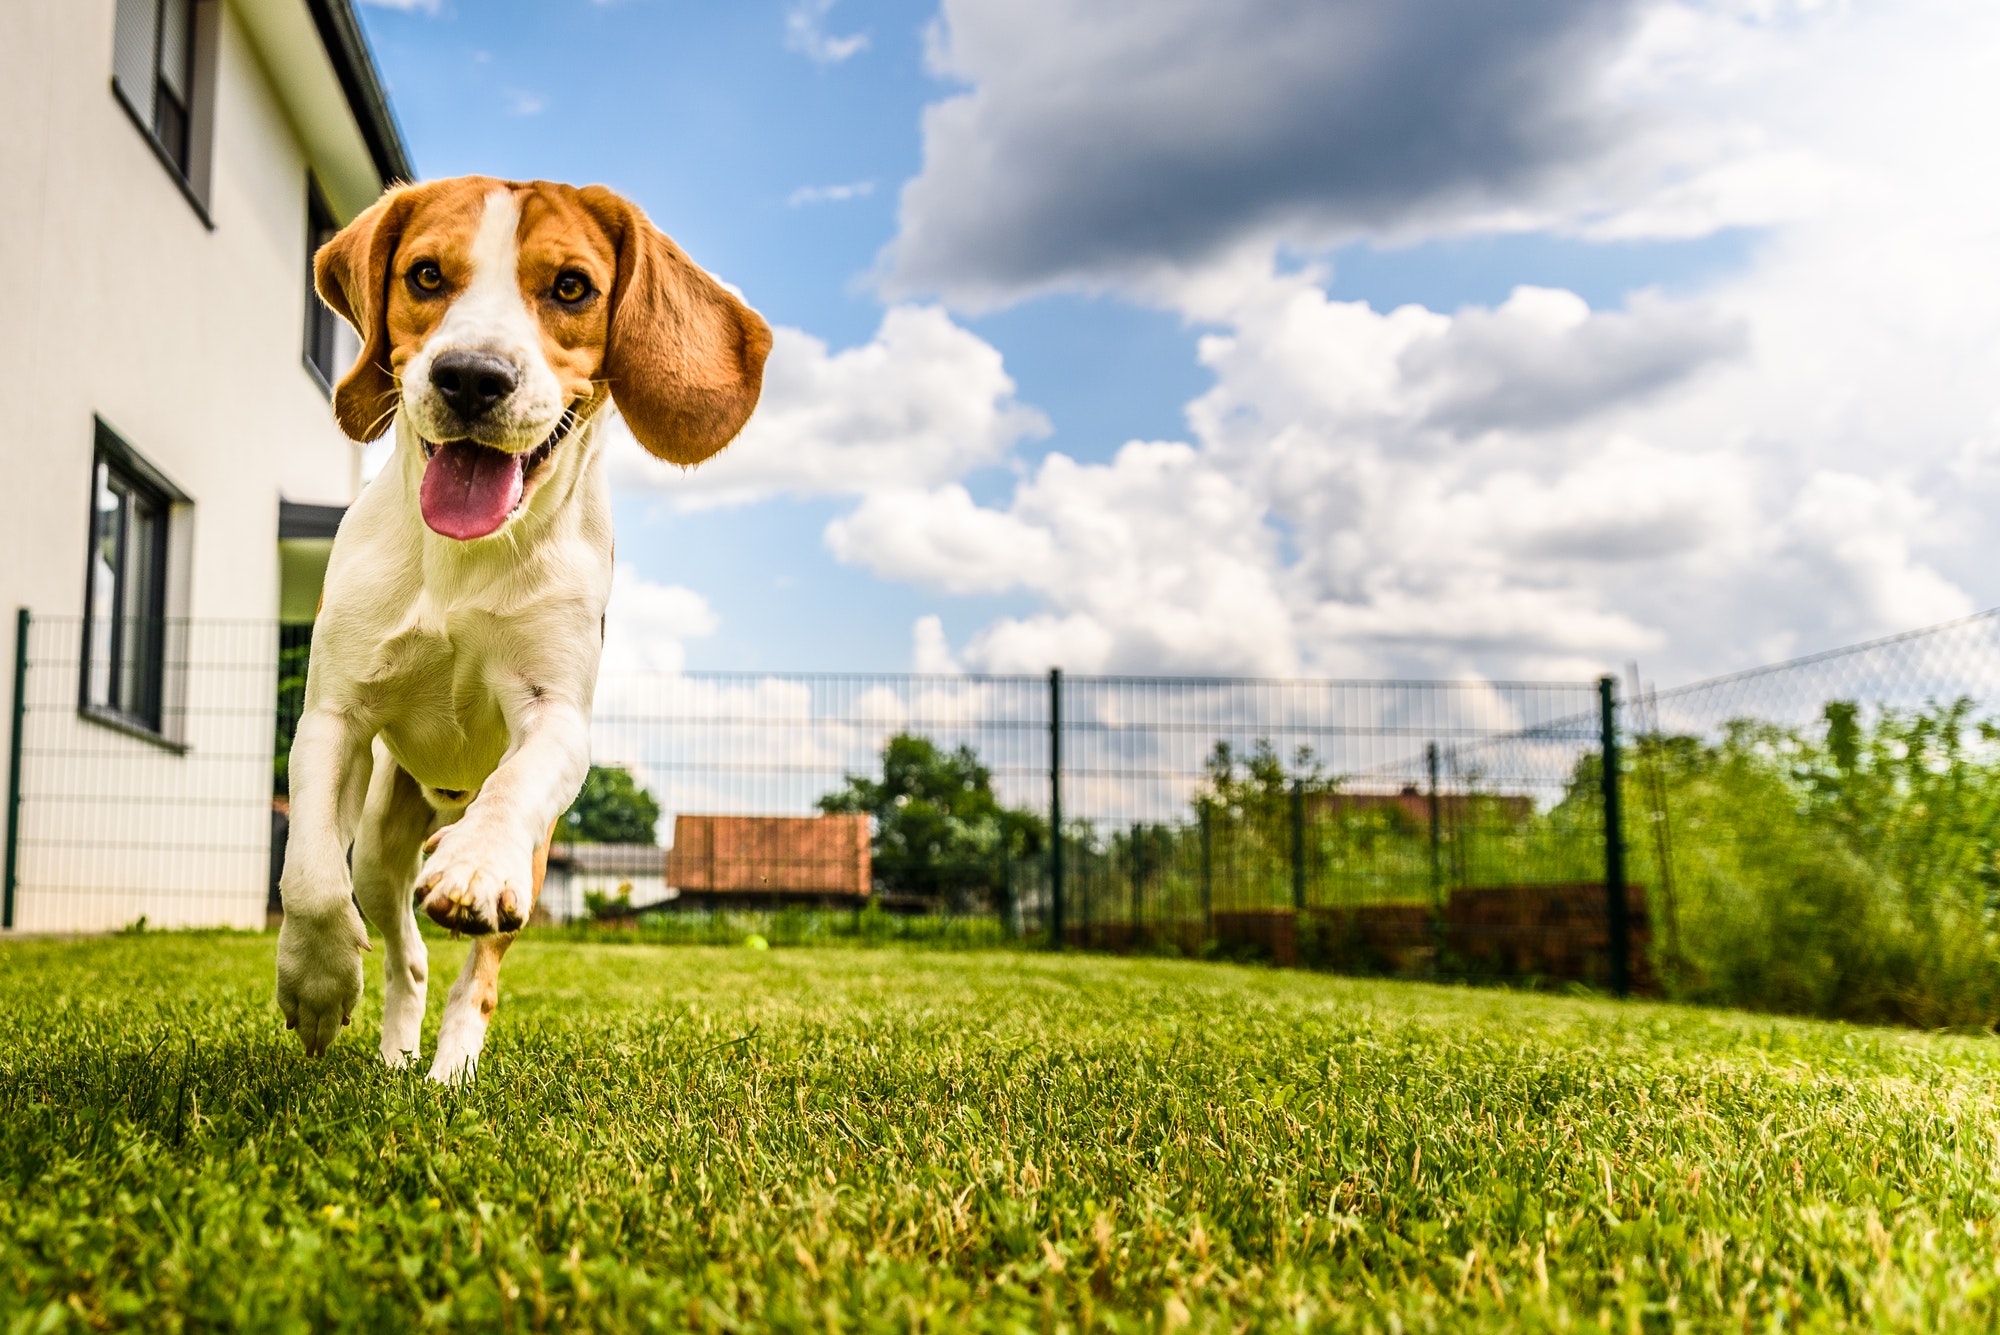 Beagle dog running in fenced yard